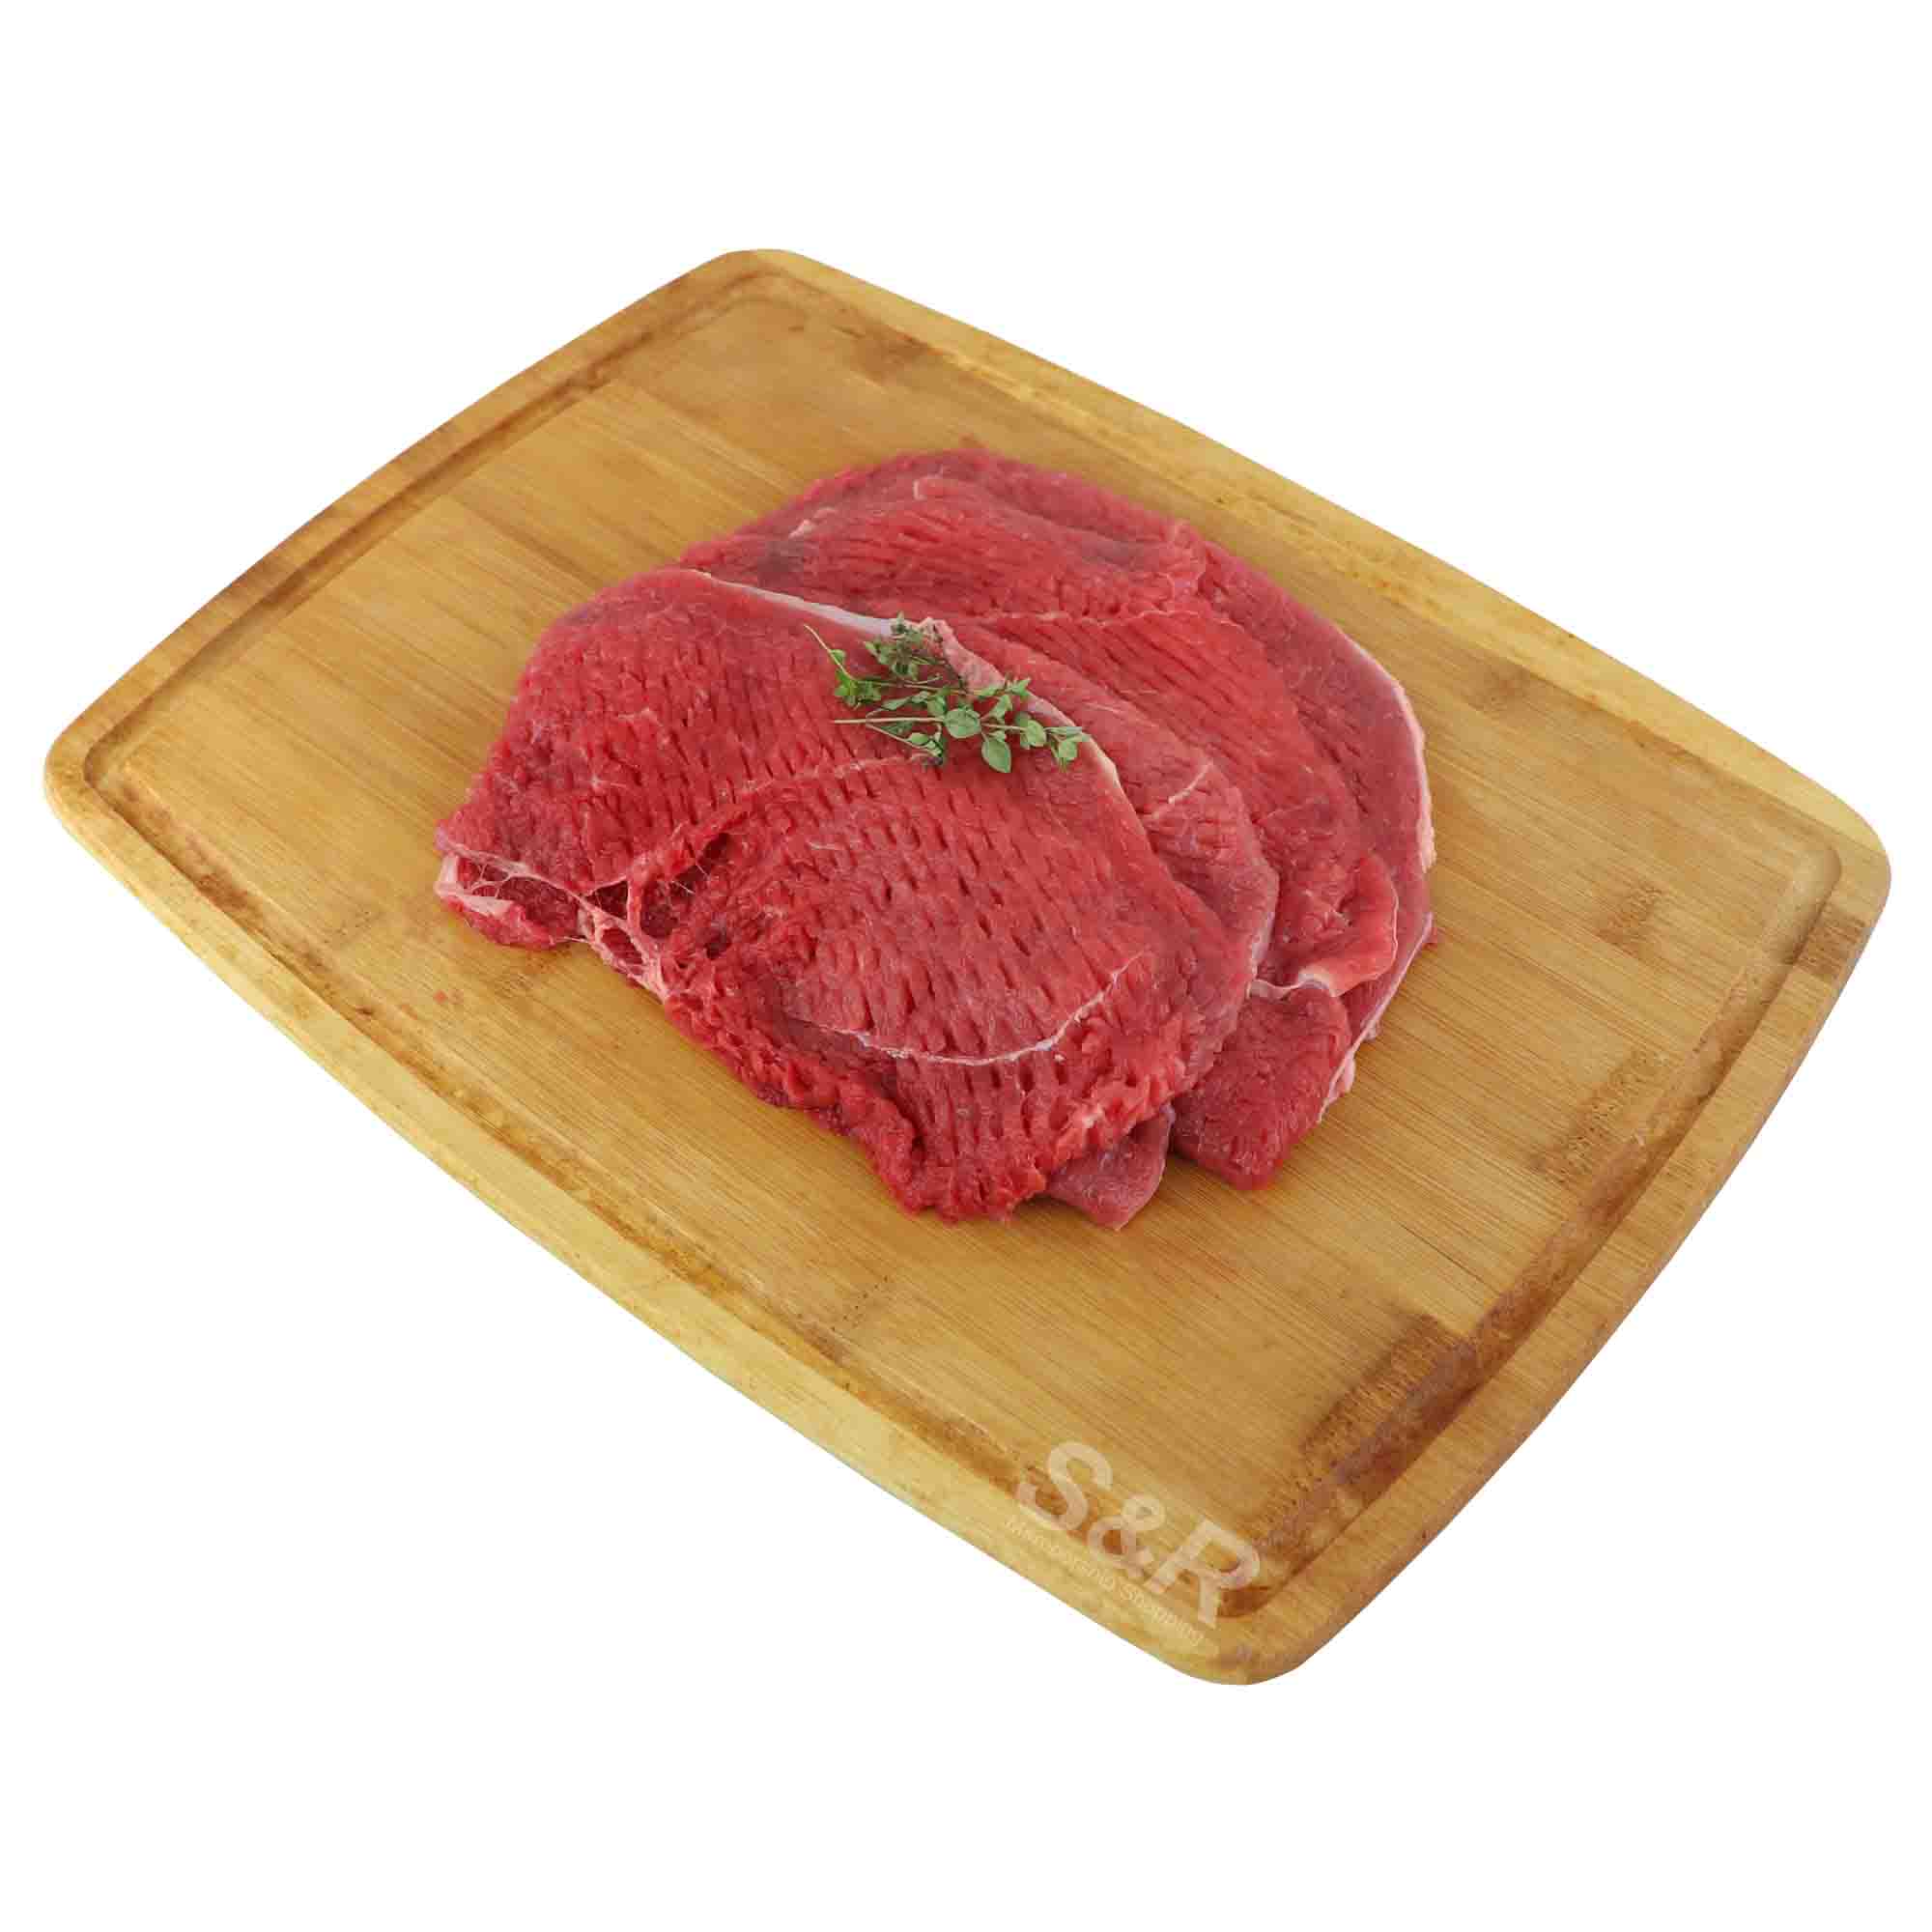 Members' Value Beef Minute Steak approx. 2kg